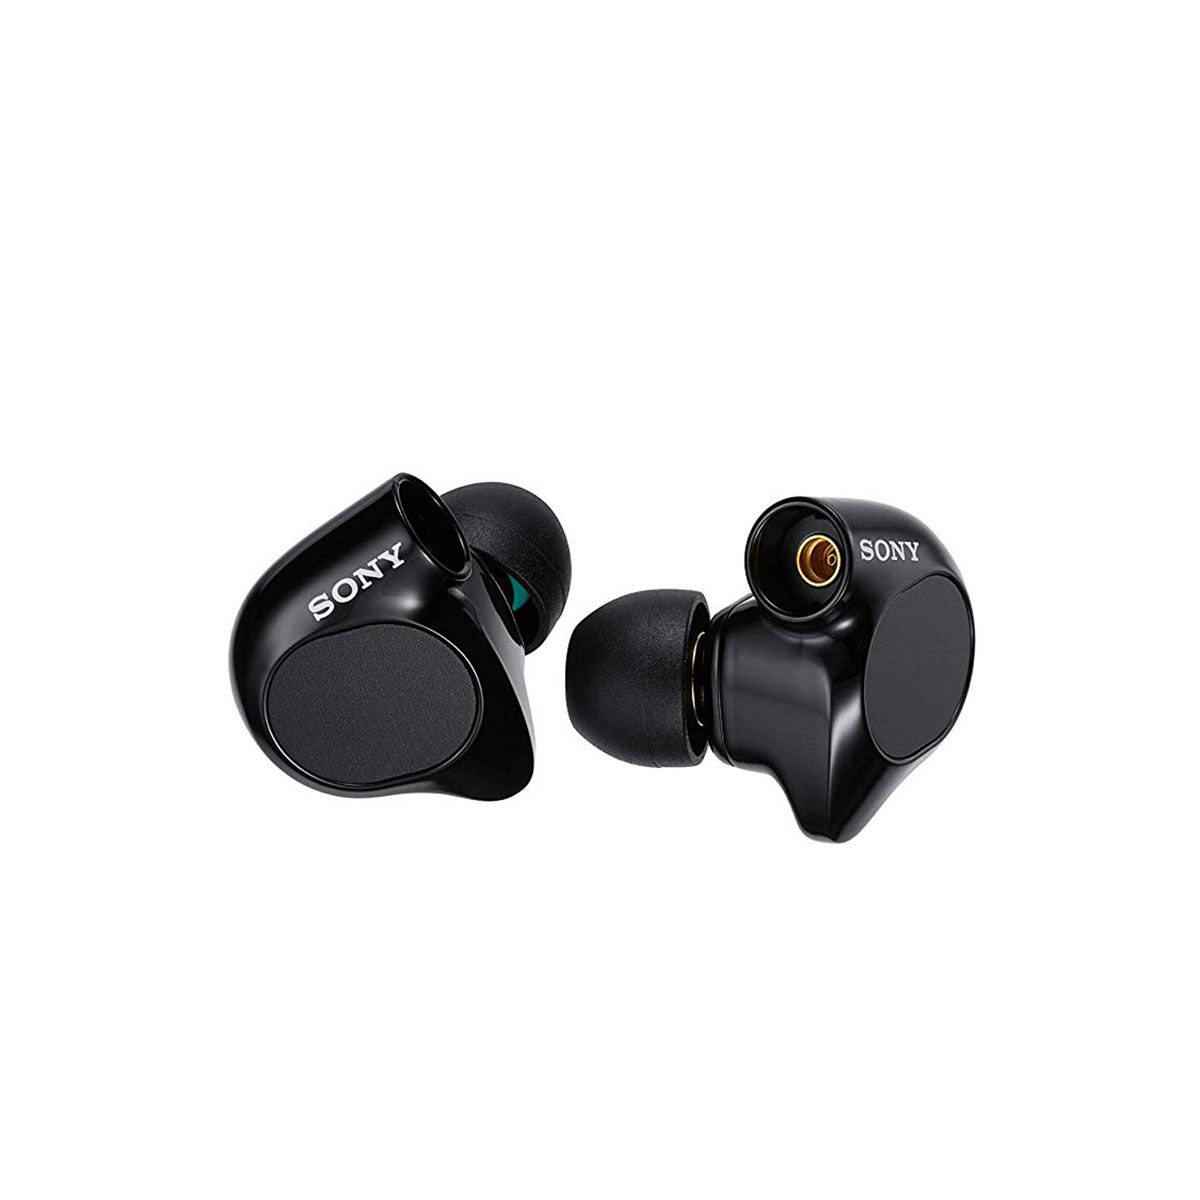 IER-M7 In-Ear Monitor Headphones